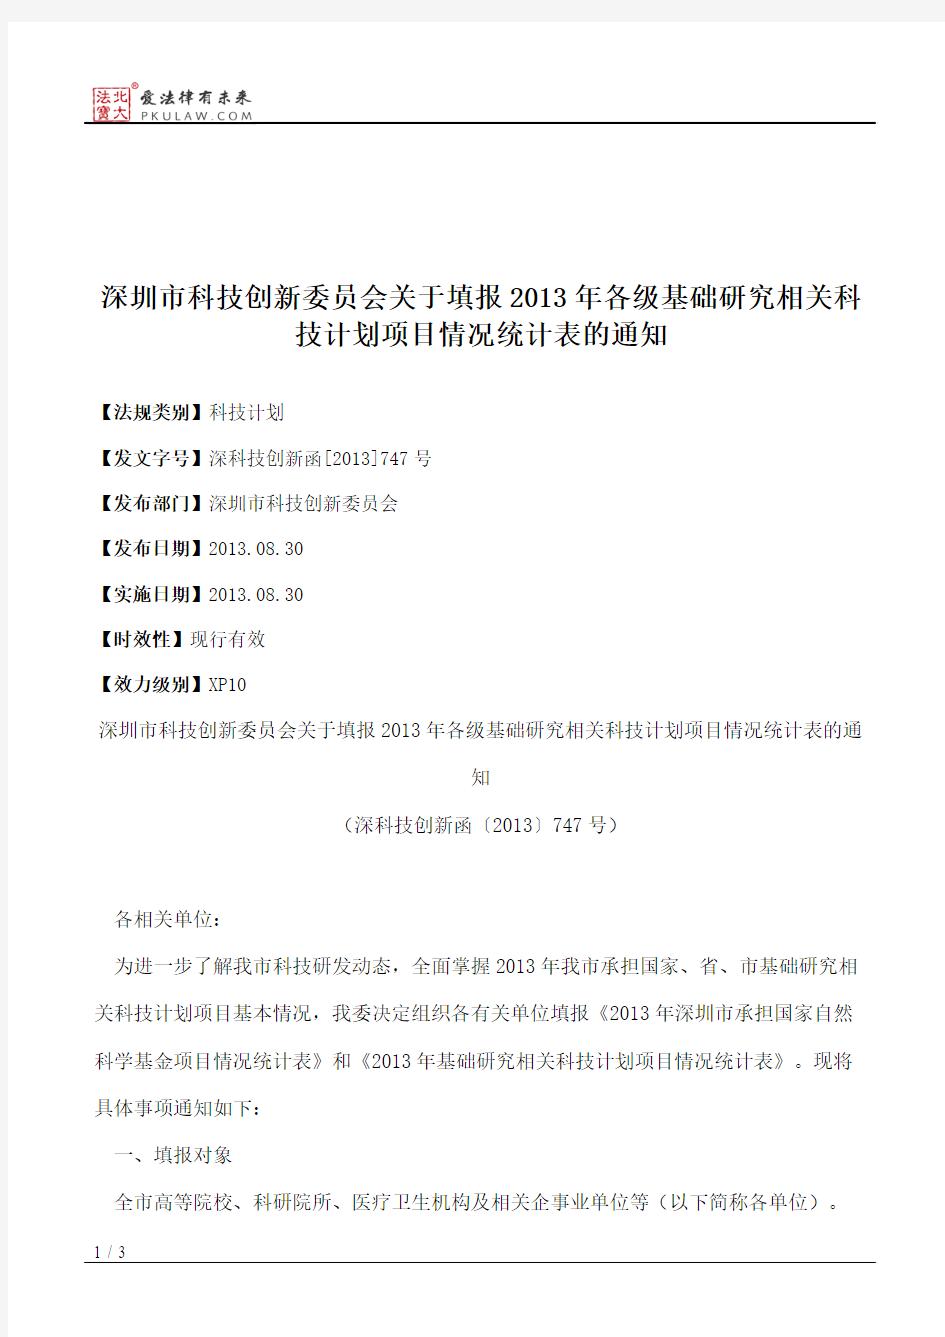 深圳市科技创新委员会关于填报2013年各级基础研究相关科技计划项